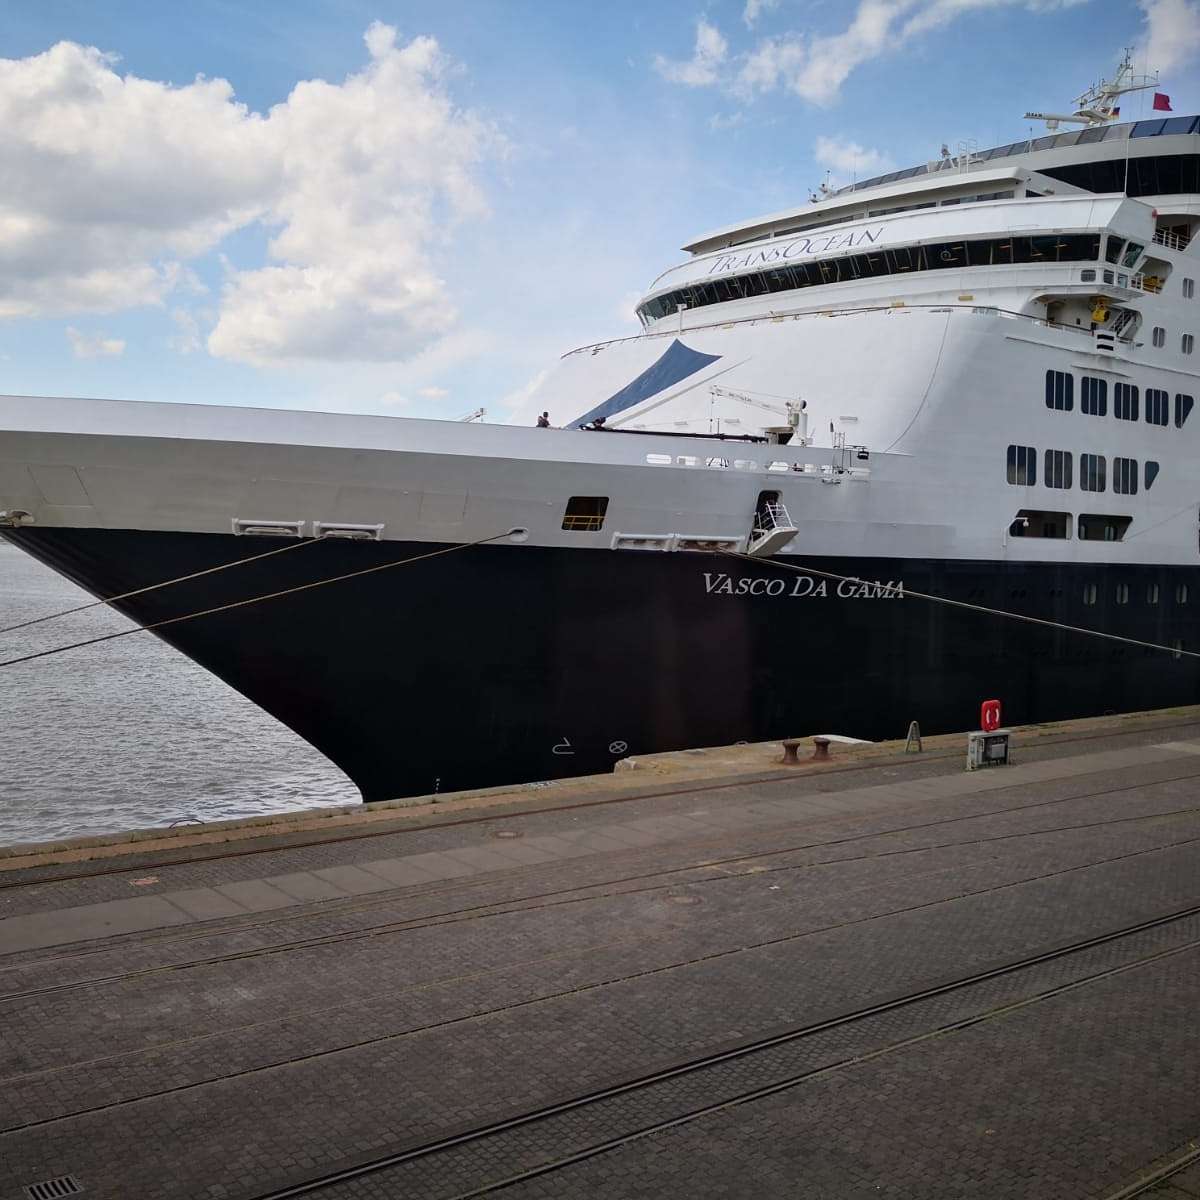 Taufe “Vasco da Gama” in Bremerhaven